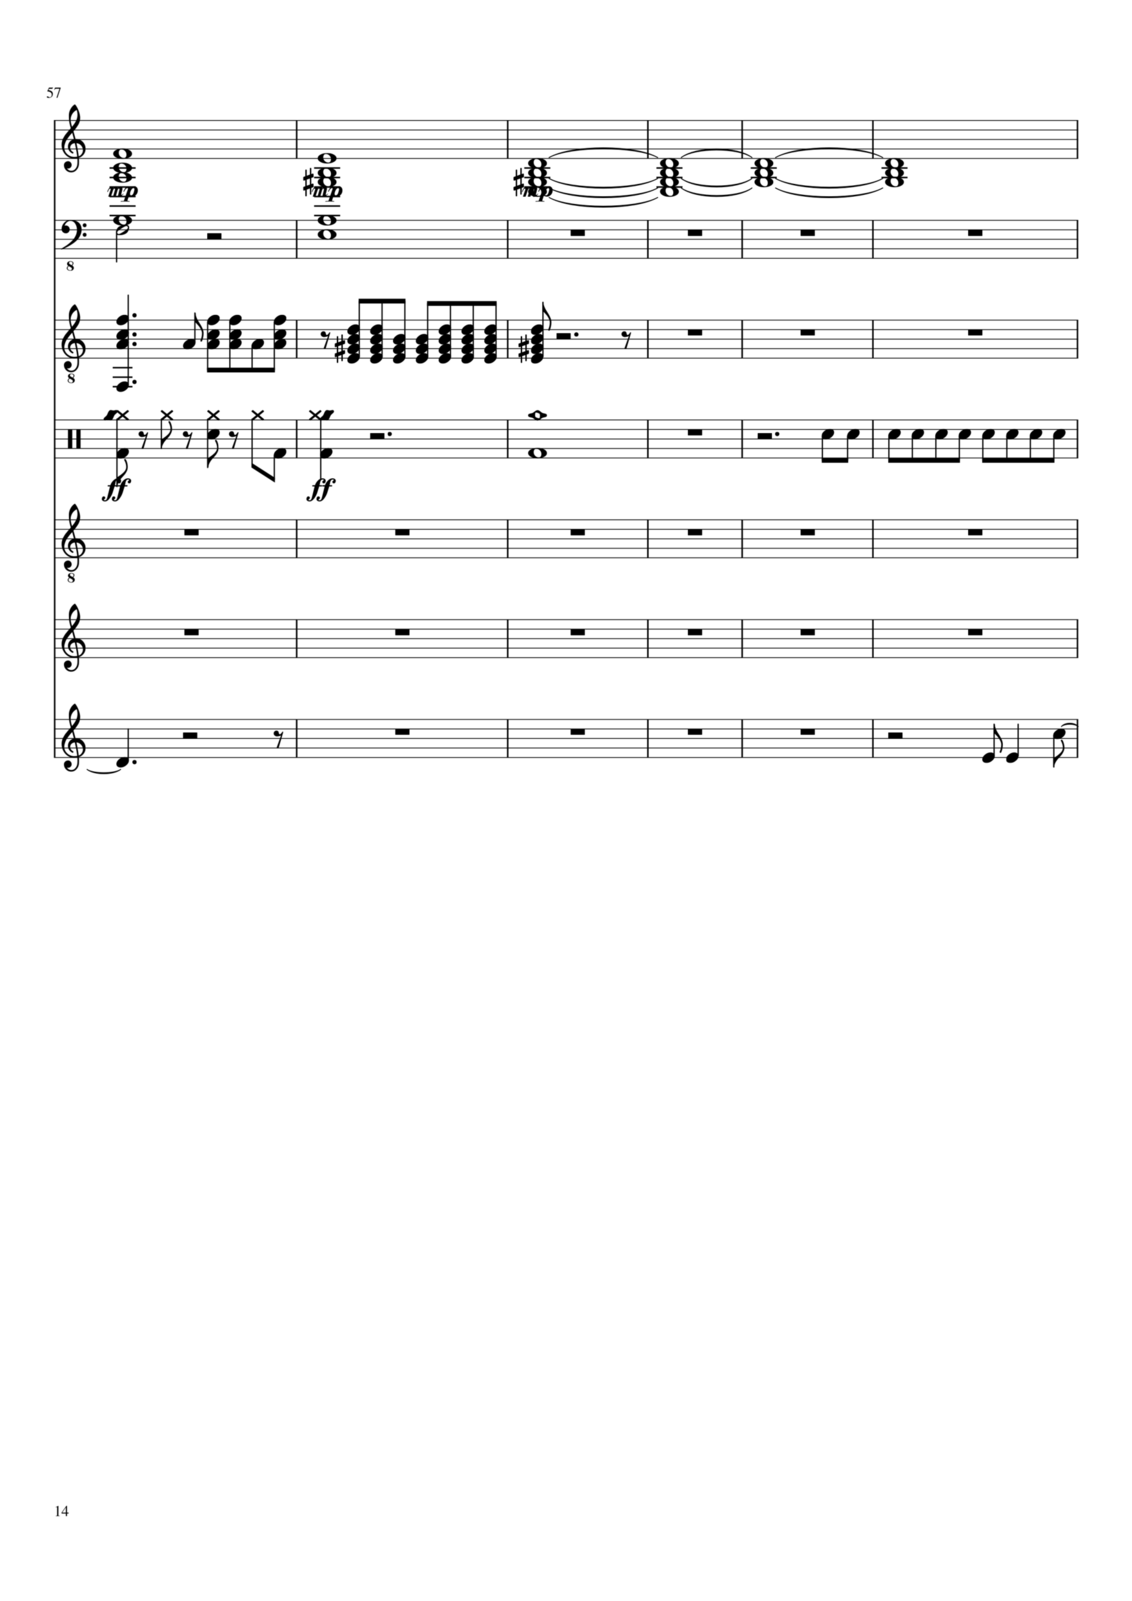 Vetryi i Tumanyi slide, Image 9